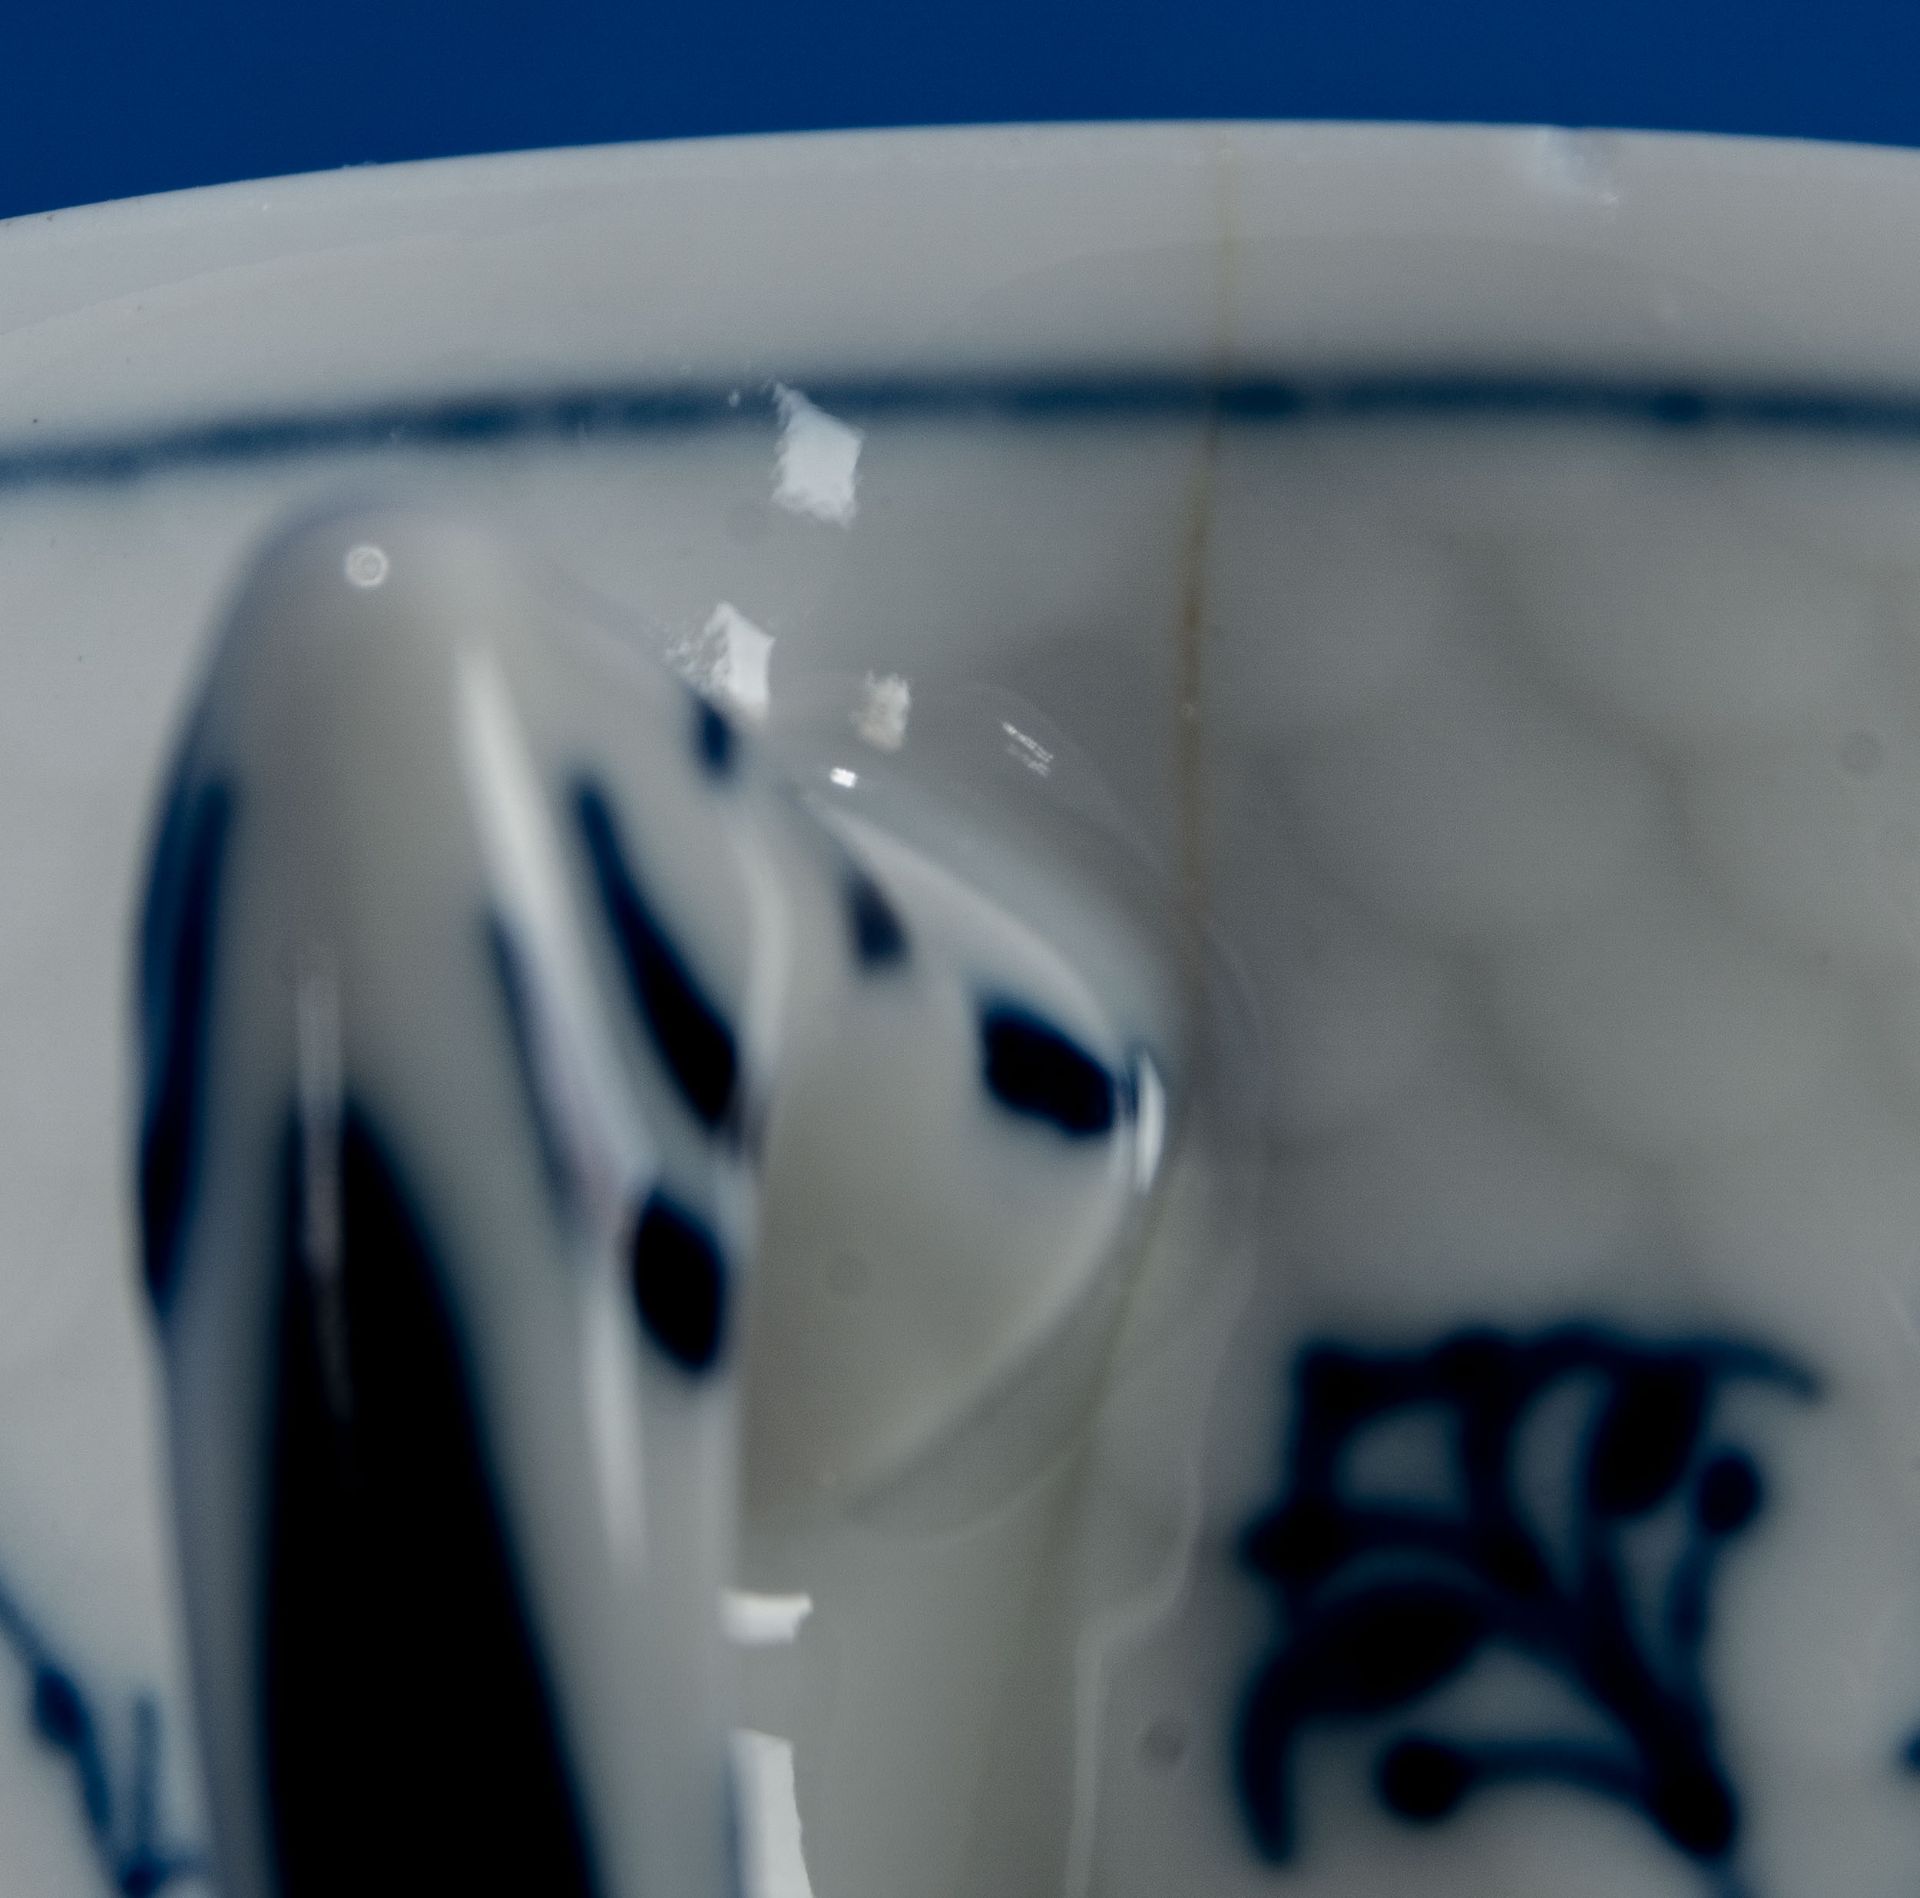 14teiliges Konvolut "Mussel Malet" Kaffeegeschirrteile; bestehend aus 5 Kaffeetassen und 9 Untertas - Image 8 of 9